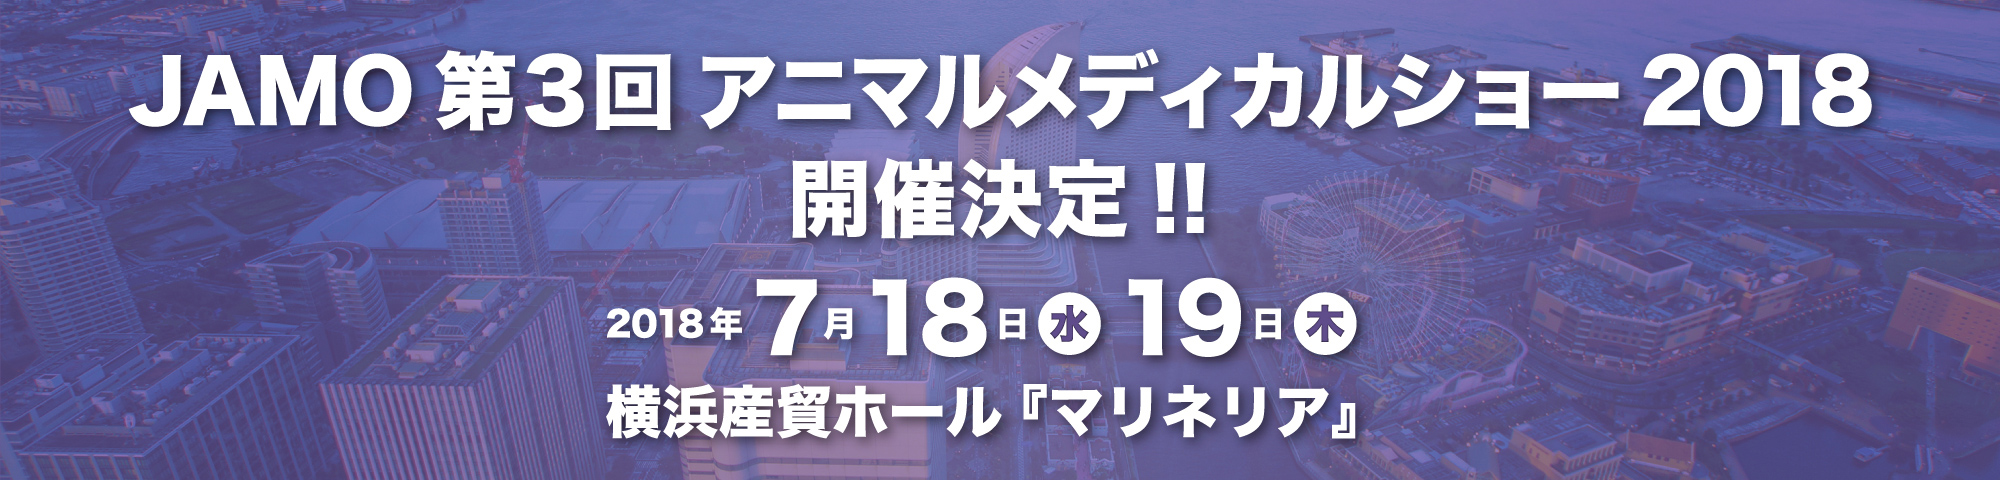 JAMO 第3回 アニマルメディカルショー2018開催決定!!2018年7月18日(水)19日(木)横浜産貿ホール『マリネリア』